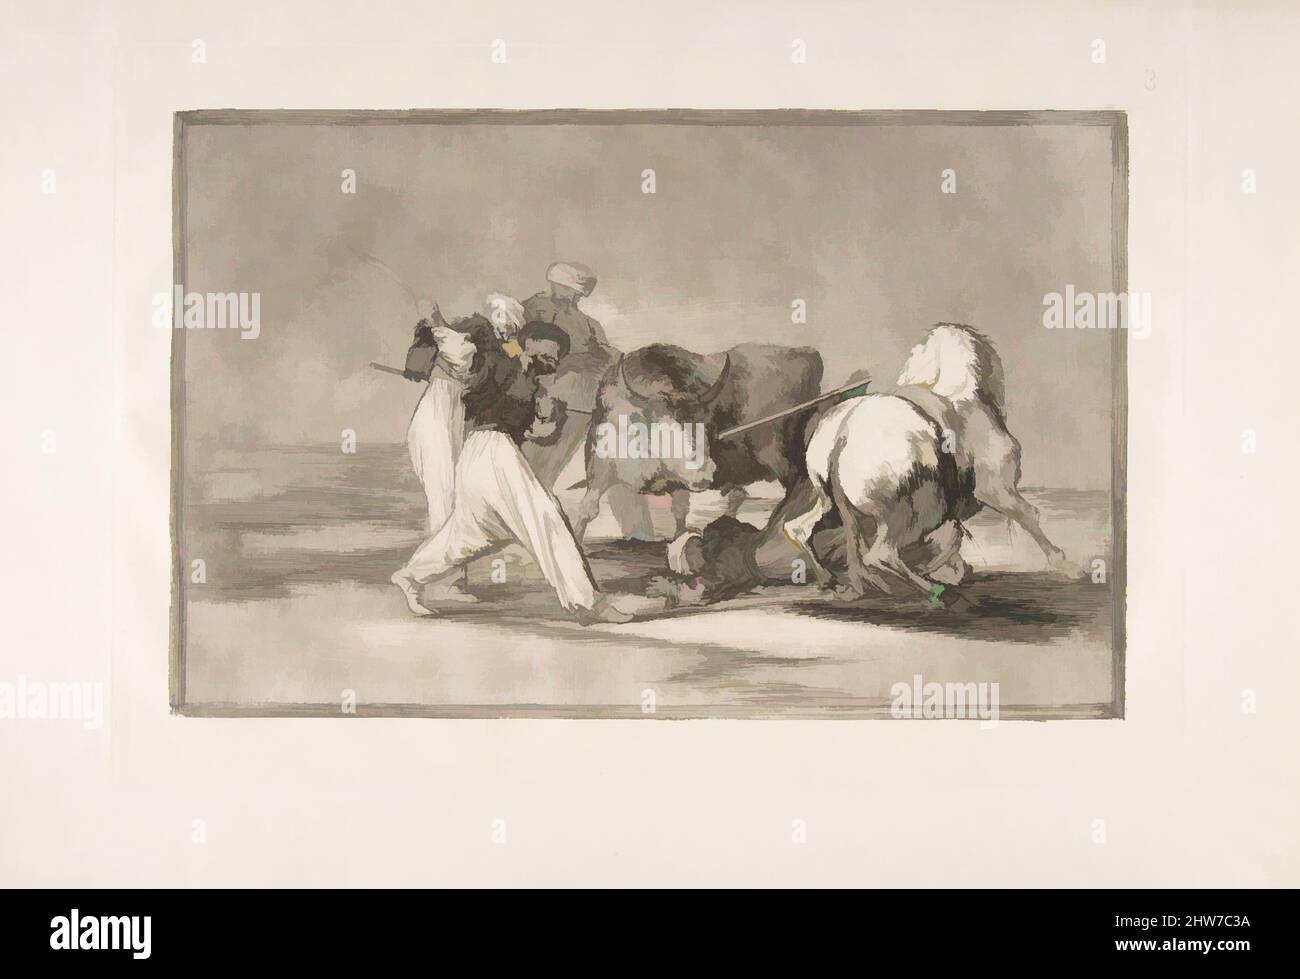 Arte ispirata dal piatto 3 della 'Tauromaquia':i Mori si stabilirono in Spagna, rinunciando alle superstizioni del Corano, adottarono questa arte di caccia, e spear un toro all'aperto, 1816, incisione, acquatinta brunita, punto secco e burin, Piastra: 9 5/8 x 13 3/4 poll. (24,5 x 35 cm), stampe, Goya (, opere classiche modernizzate da Artotop con un tuffo di modernità. Forme, colore e valore, impatto visivo accattivante sulle emozioni artistiche attraverso la libertà delle opere d'arte in modo contemporaneo. Un messaggio senza tempo che persegue una nuova direzione selvaggiamente creativa. Artisti che si rivolgono al supporto digitale e creano l'NFT Artotop Foto Stock